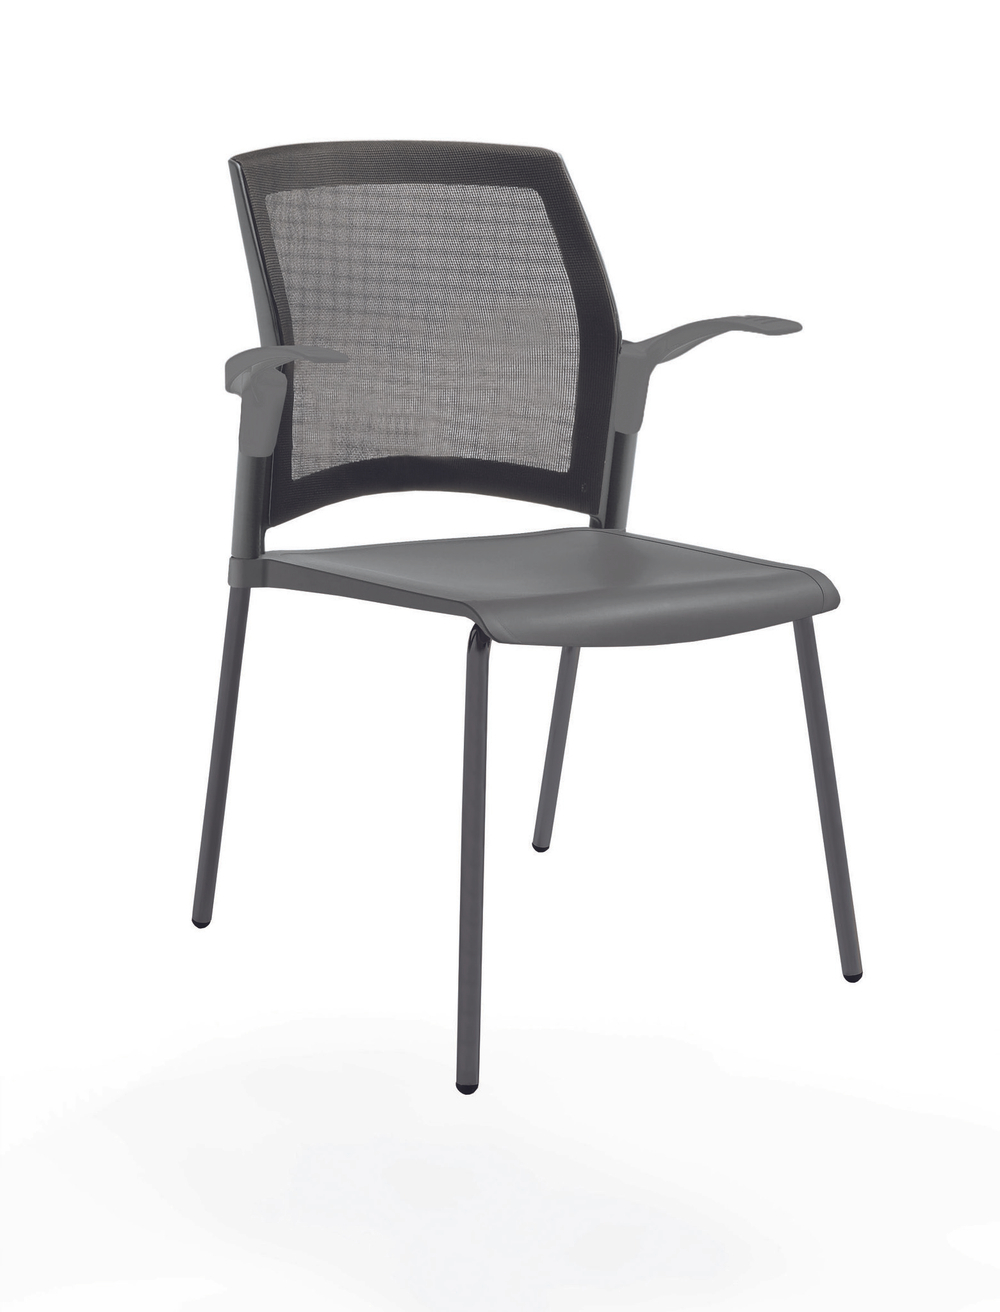 стул Rewind на 4 ногах, каркас черный, пластик серый, спинка-сетка, с открытыми подлокотниками